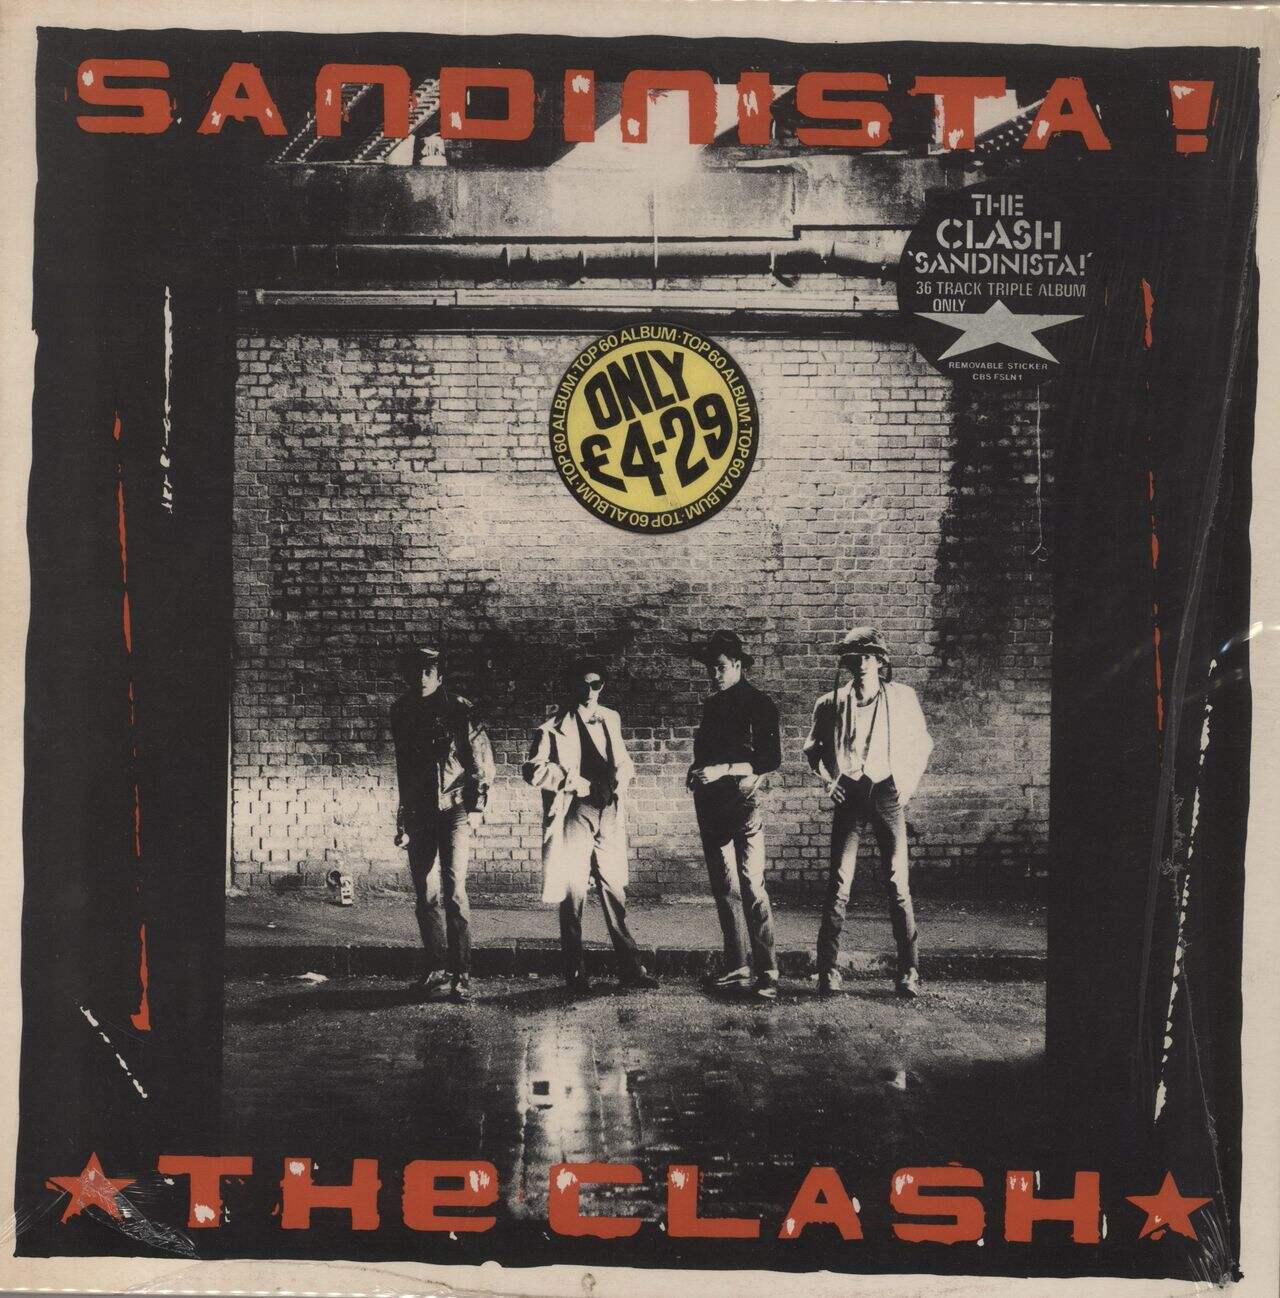 The Clash Sandinista! - 1st + Insert - Stickered - Stickered Shrink UK 3-LP vinyl set